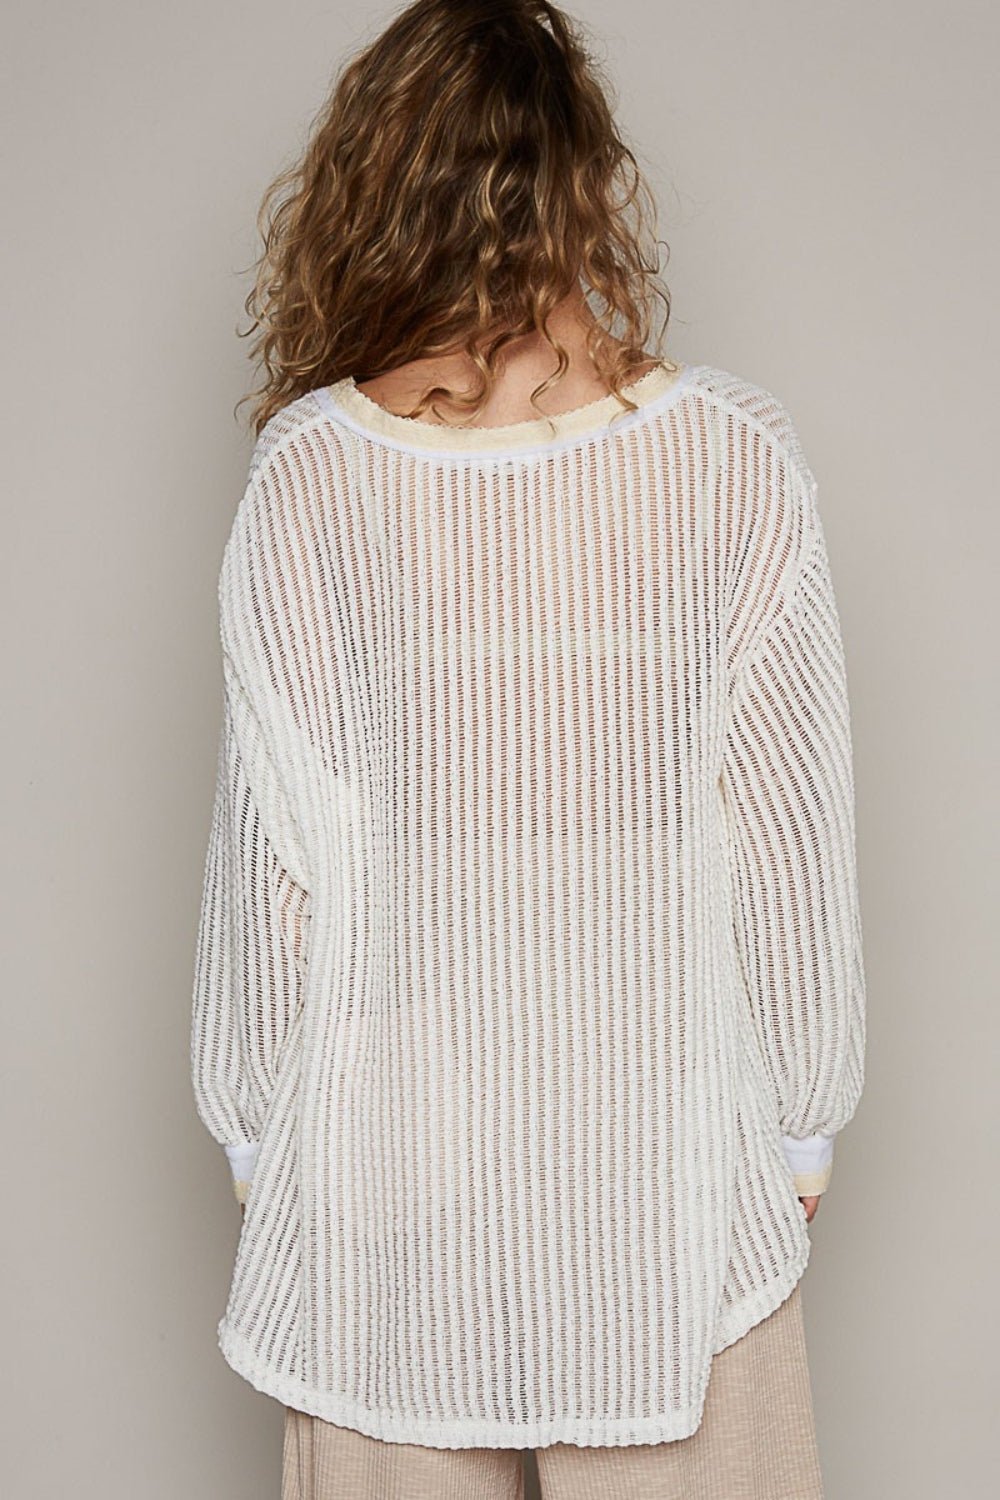 V-Neck Long Sleeve Crochet Top in Off-WhiteTopPOL